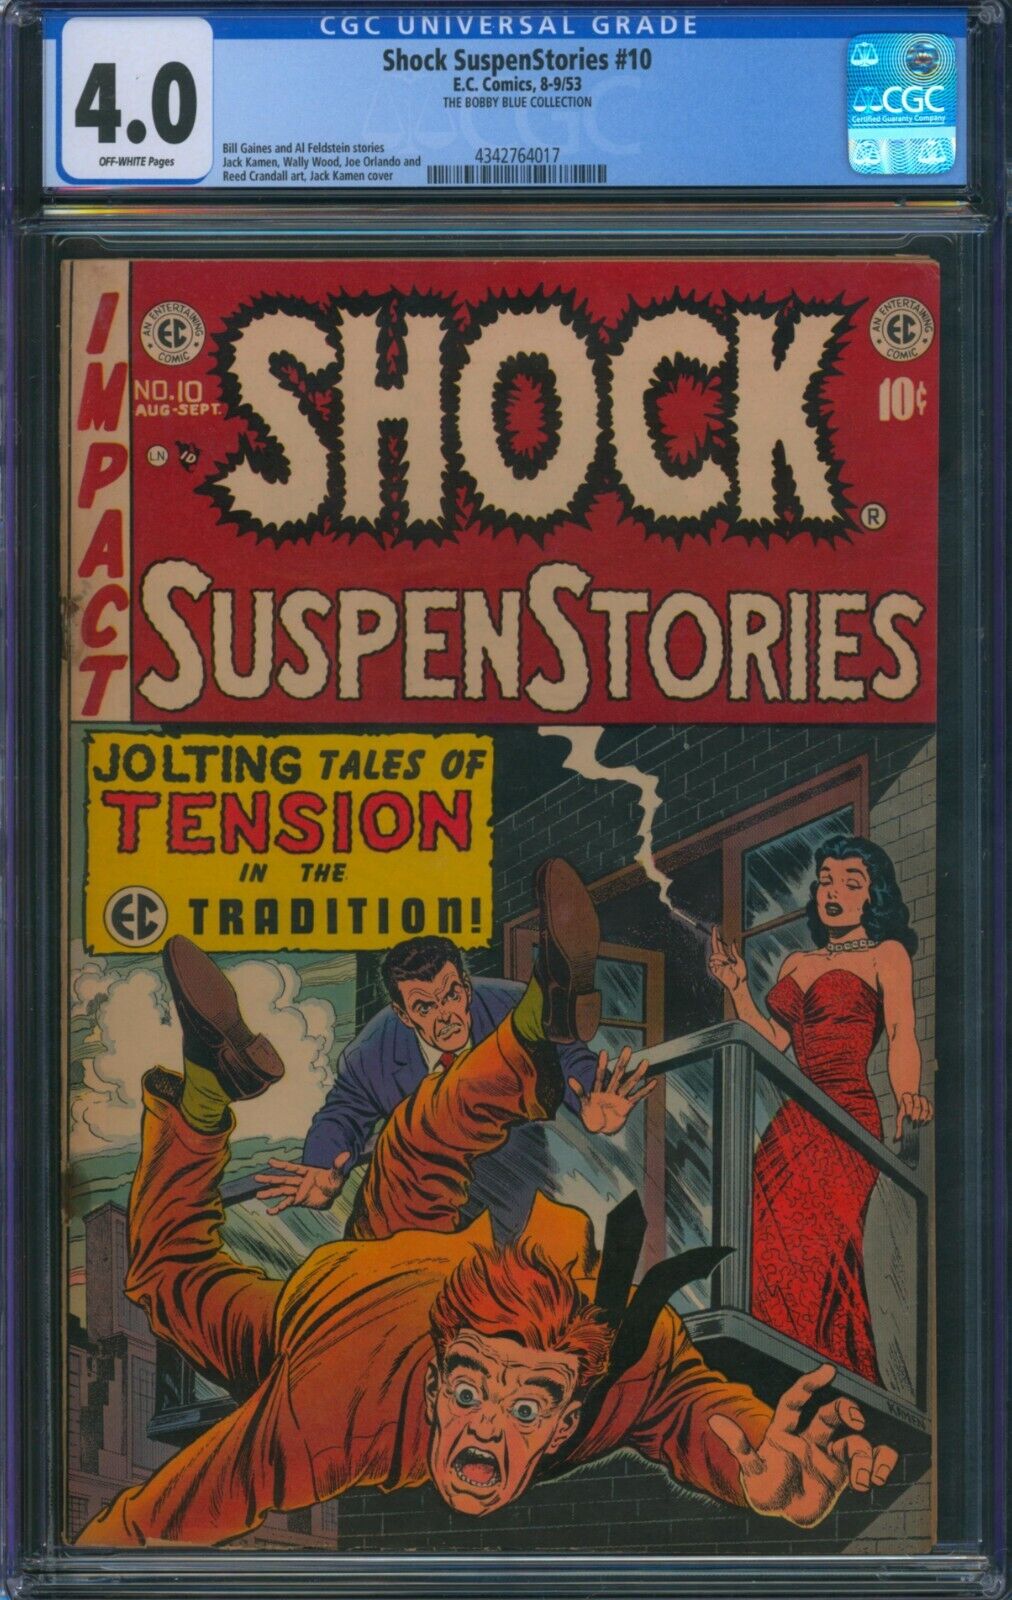 Shock SuspenStories #10 ⭐ CGC 4.0 ⭐ Rare Golden Age Horror EC Comic 1953